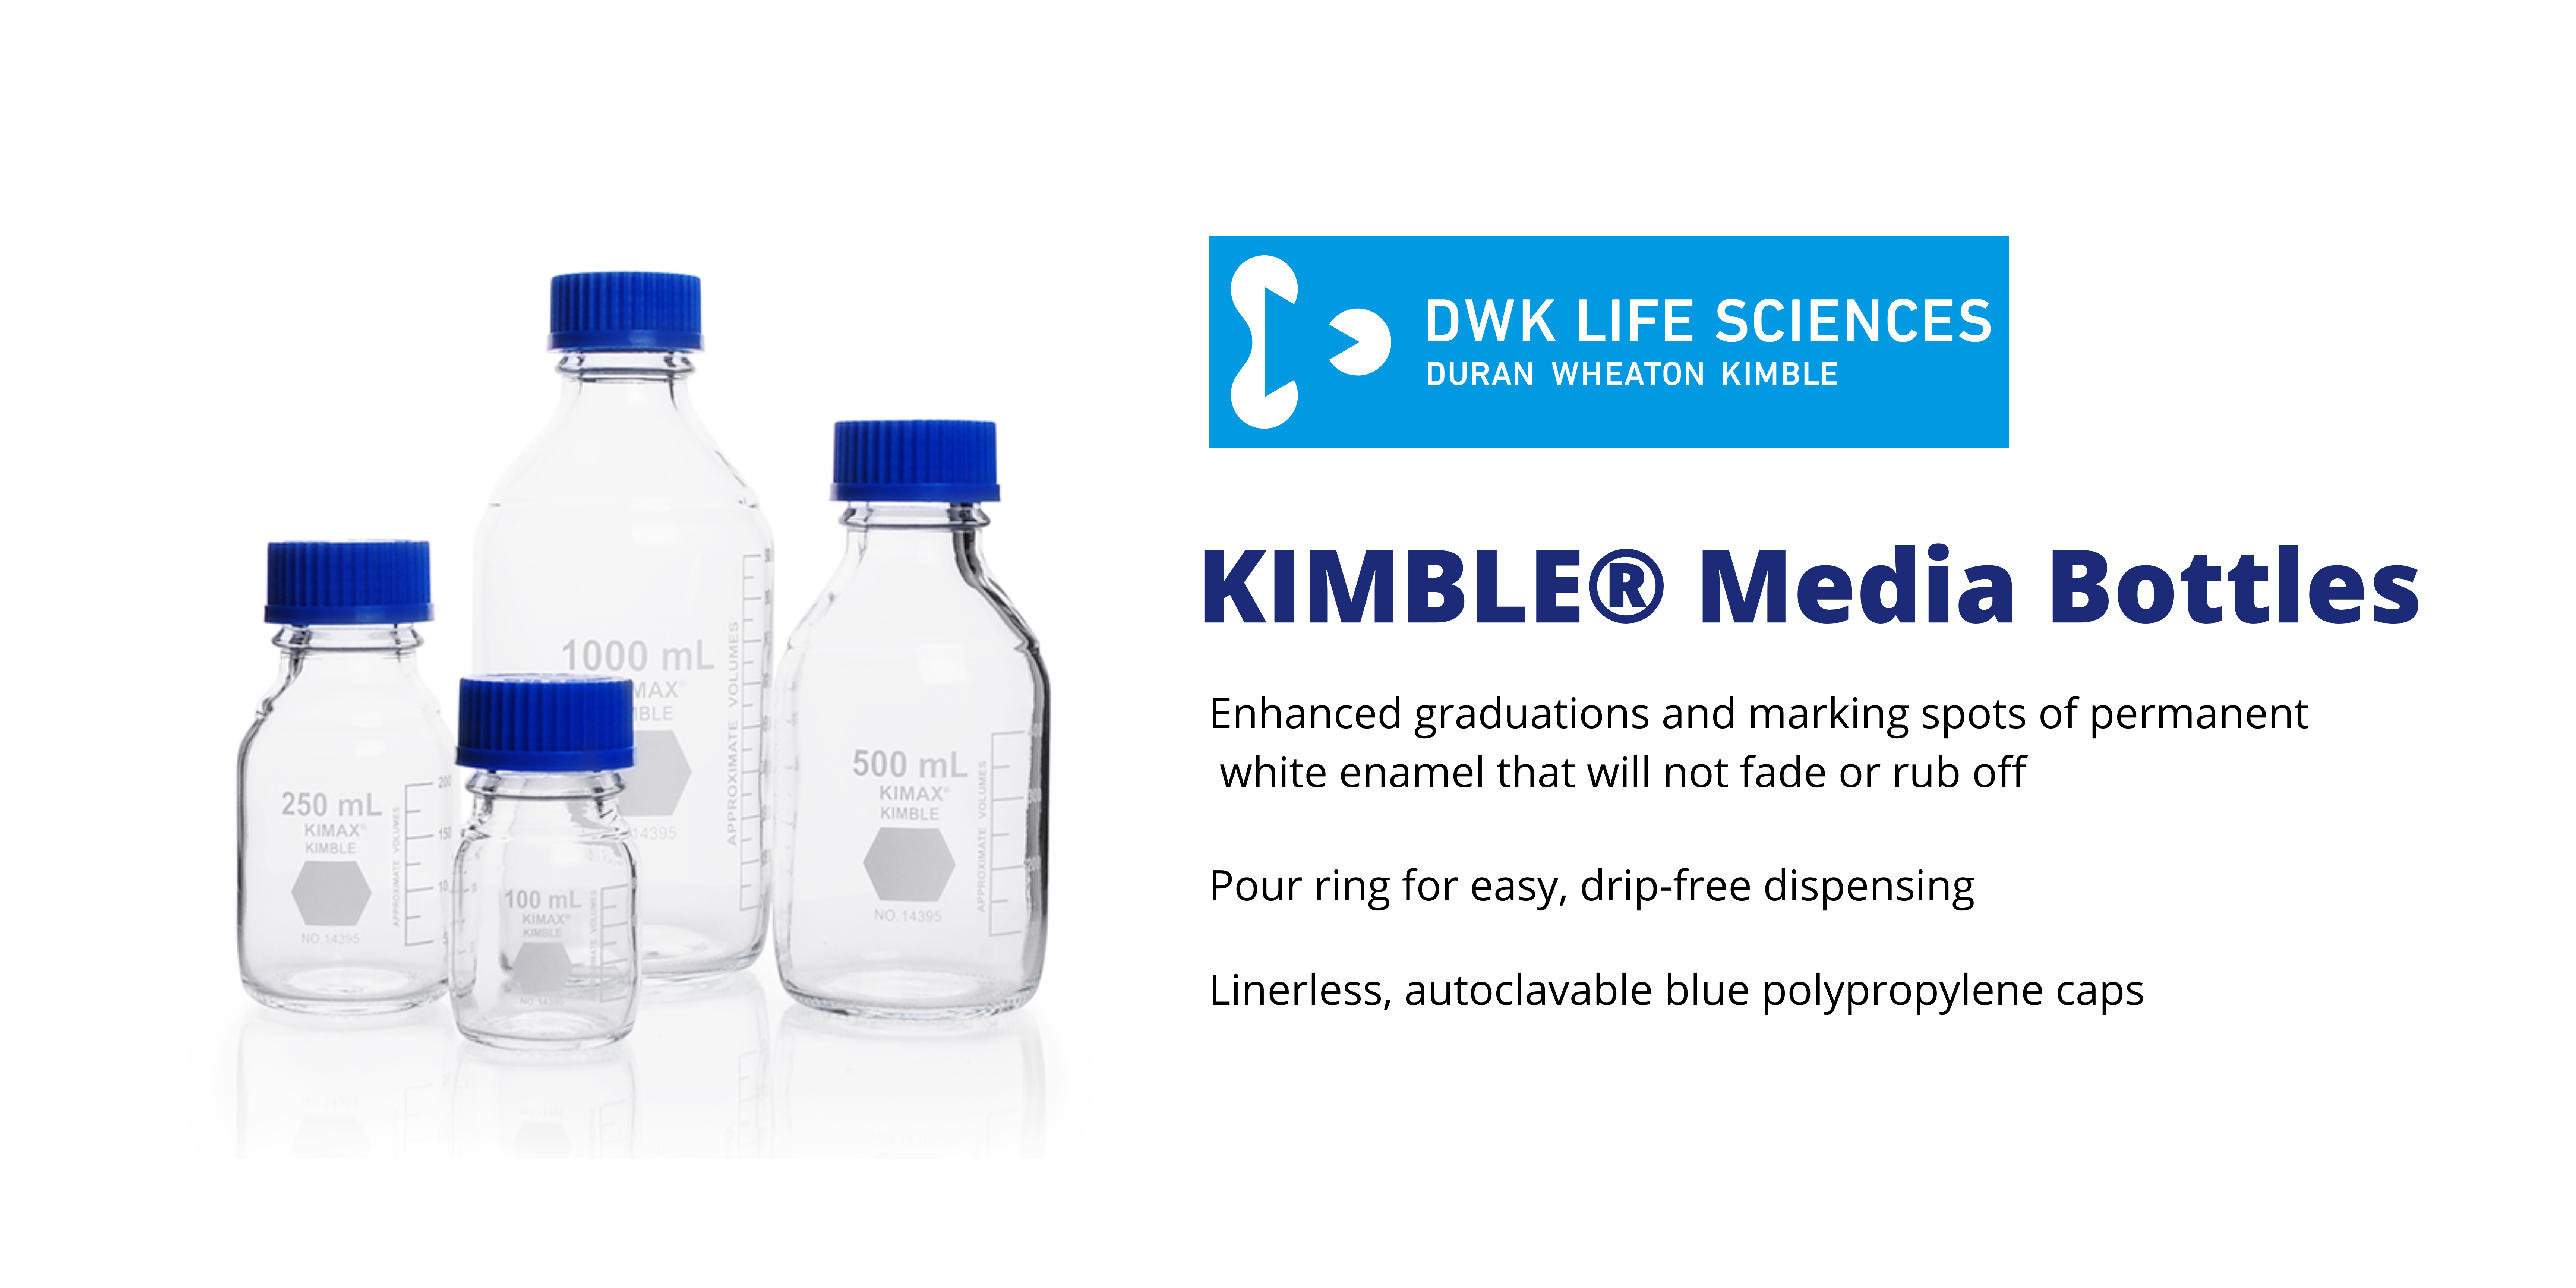 DWK Kimble bottles